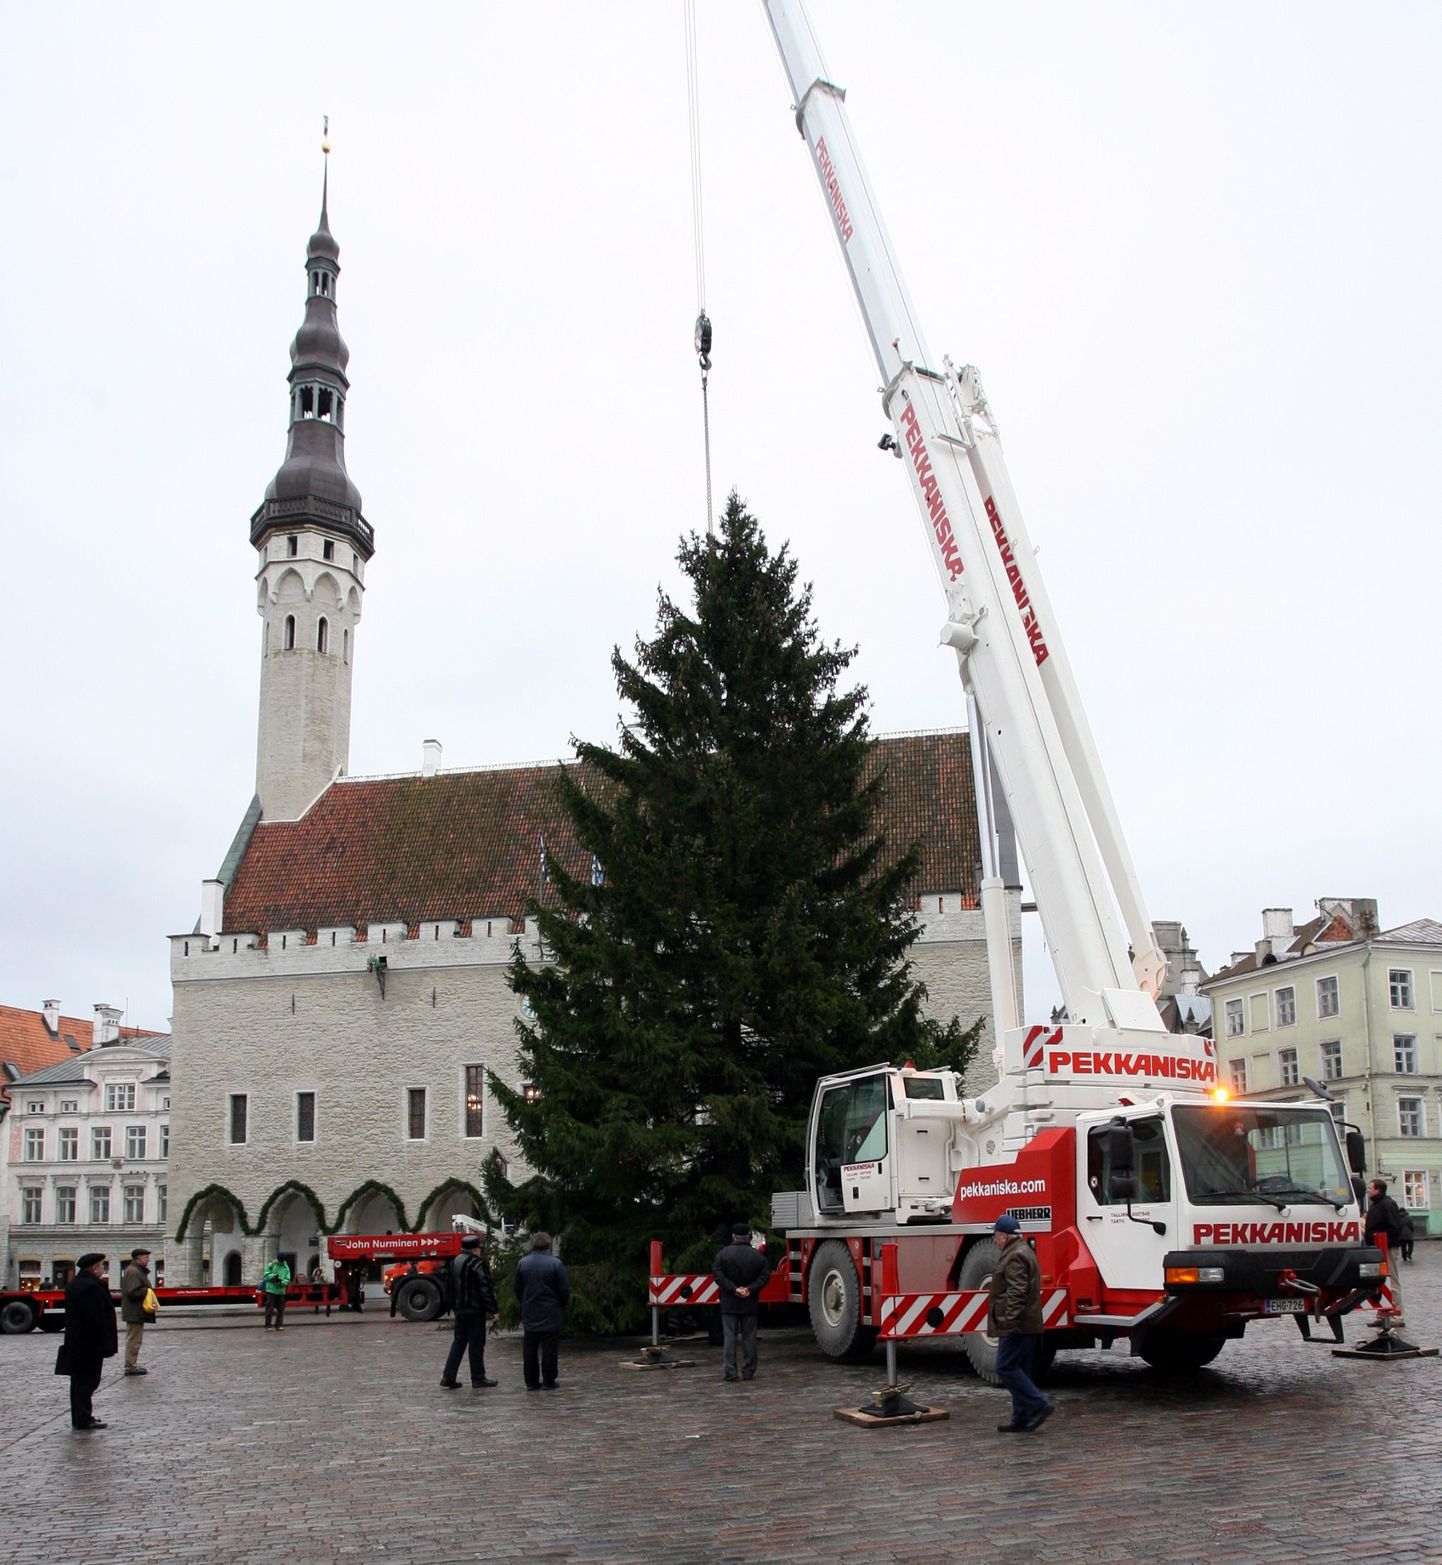 Tallinna jõulukuusk on enamasti kallim kui teiste linnade omad. Möödunud aastal toodi kuusk Raekoja platsi Kadrinast.